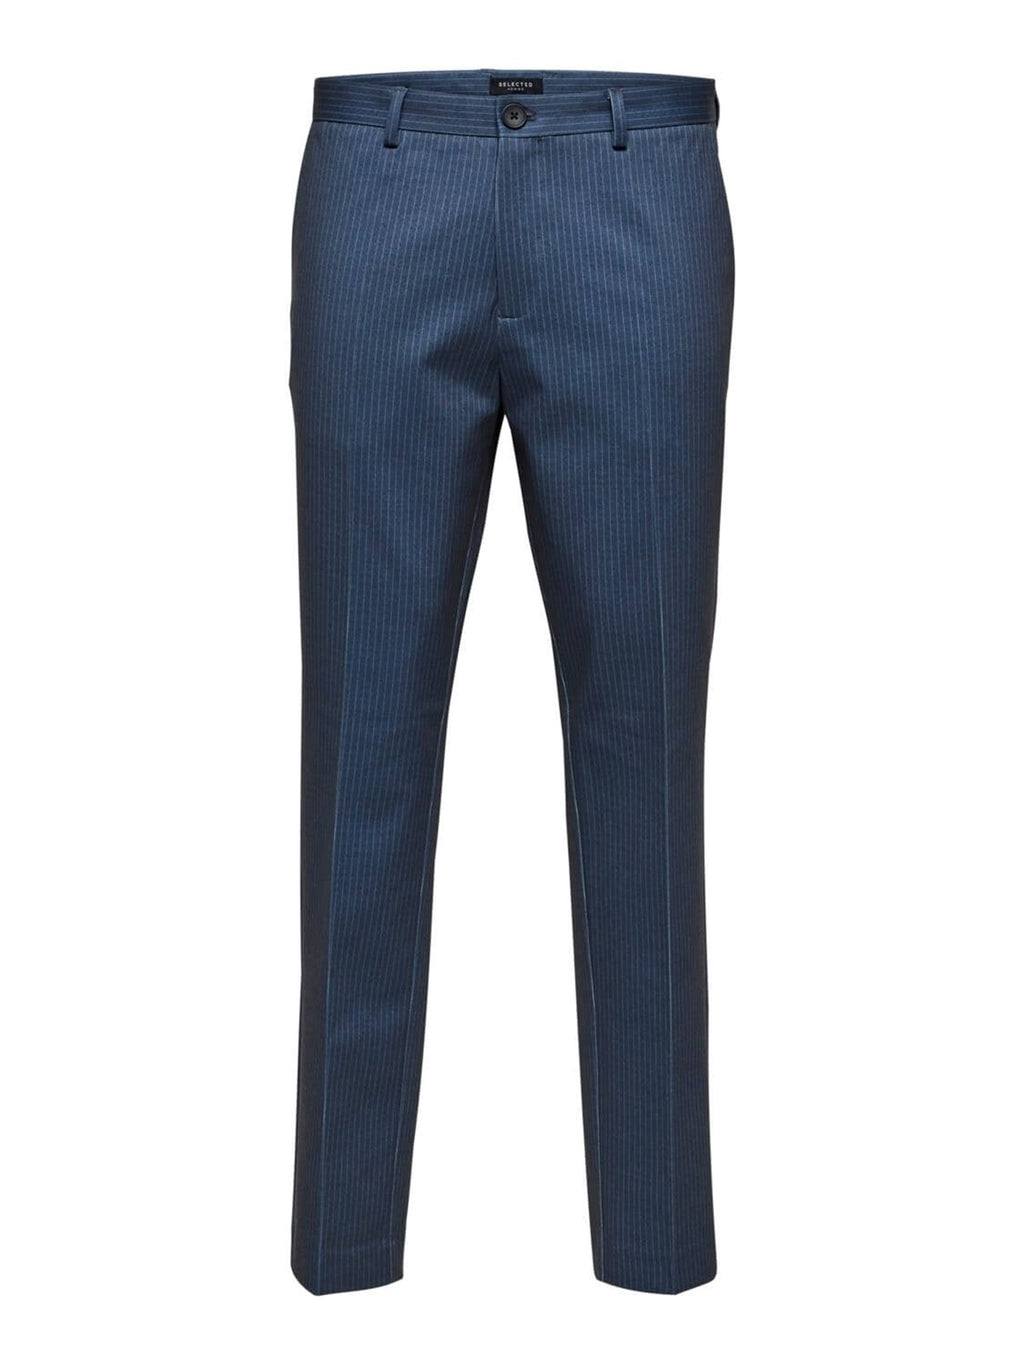 Aiden Suit Pants - Navy (Striper)